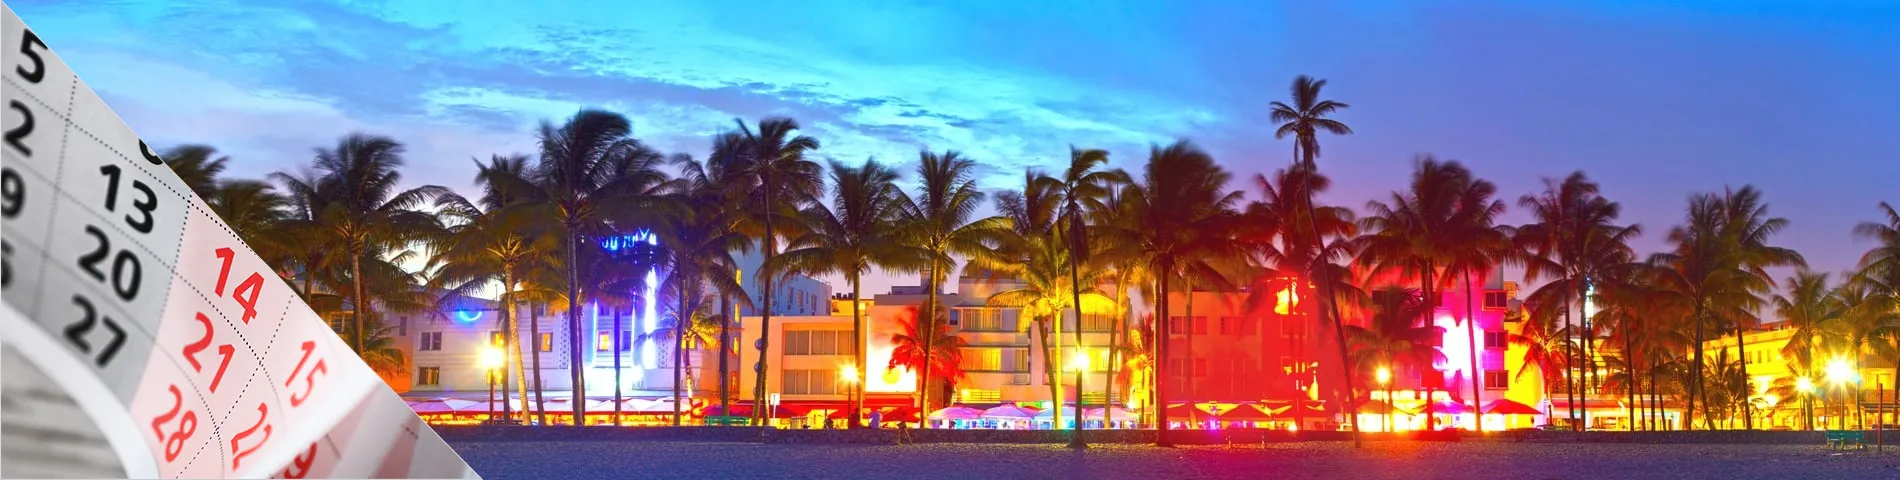 Miami - Hétvégi tanfolyam